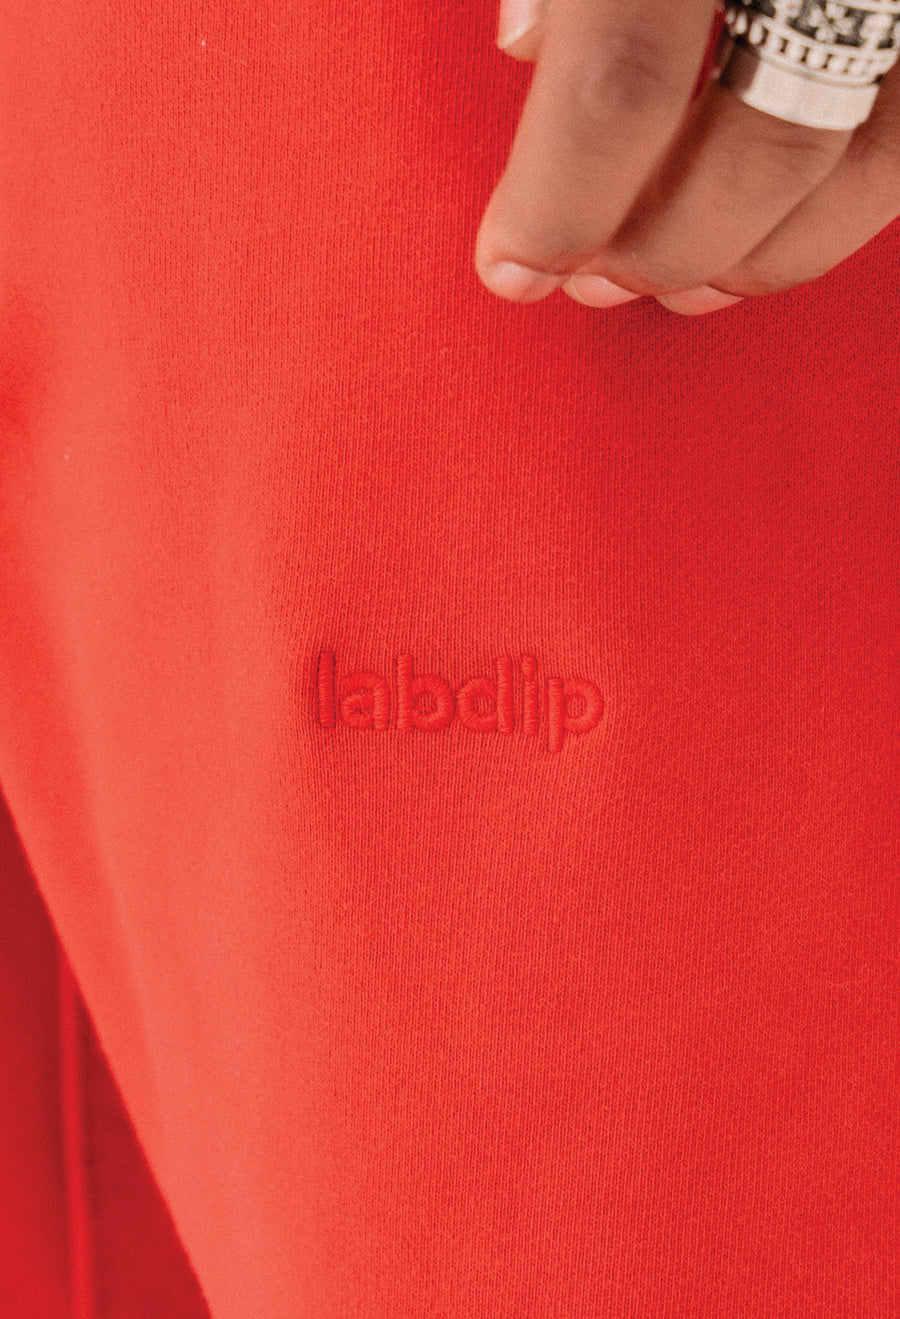 labdip Signature Sweatpant Cherry